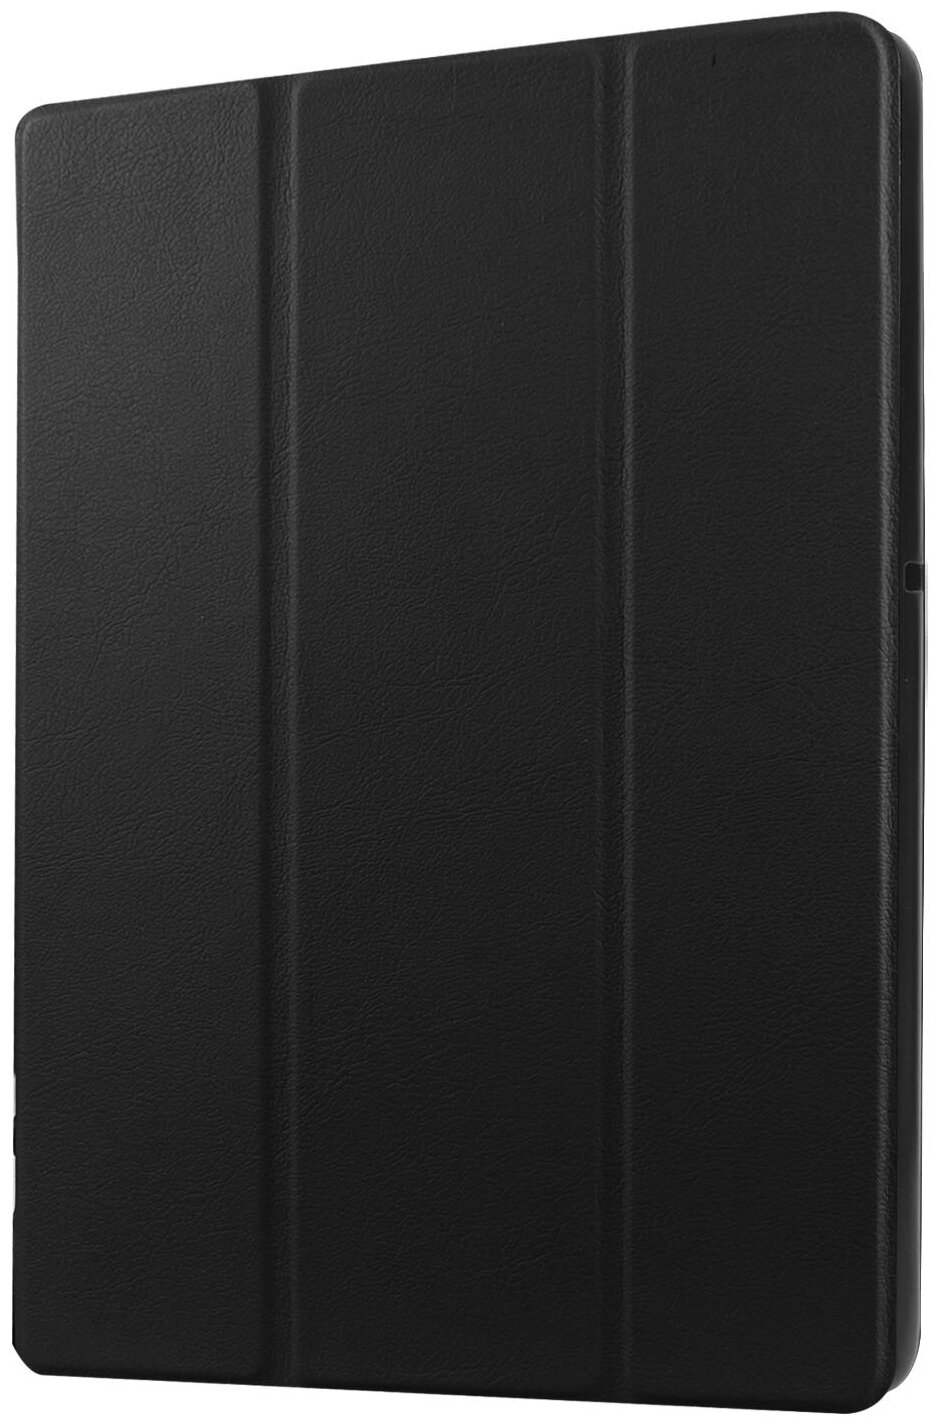 Чехол-обложка MyPads для Asus ZenPad 8 Z380C/Z380KL тонкий умный кожаный на пластиковой основе с трансформацией в подставку черный